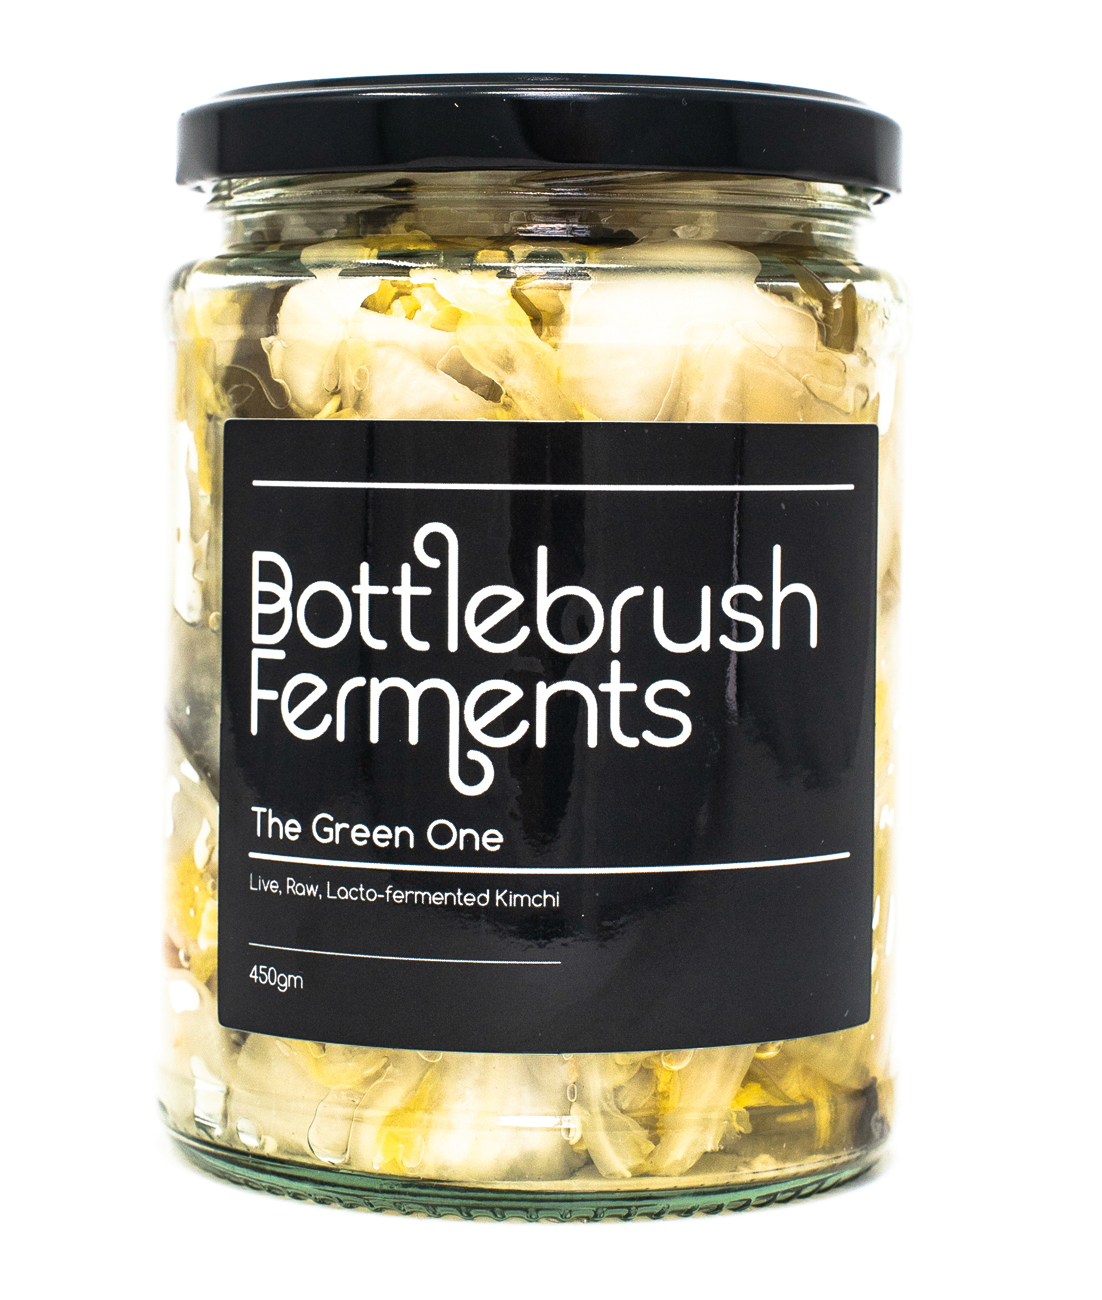 Bottlebrush-ferments